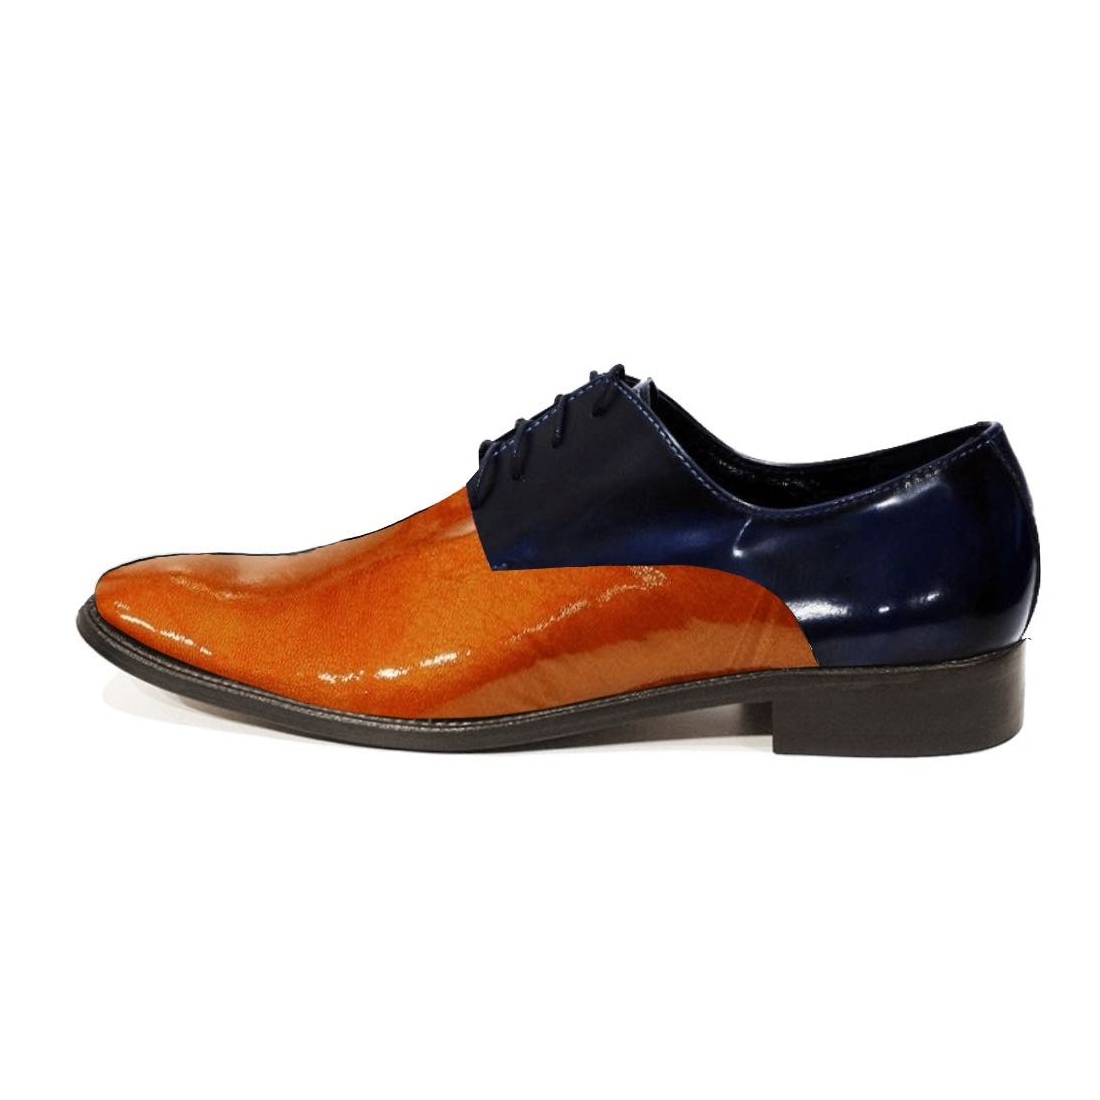 Modello Porellgo - Chaussure Classique - Handmade Colorful Italian Leather Shoes